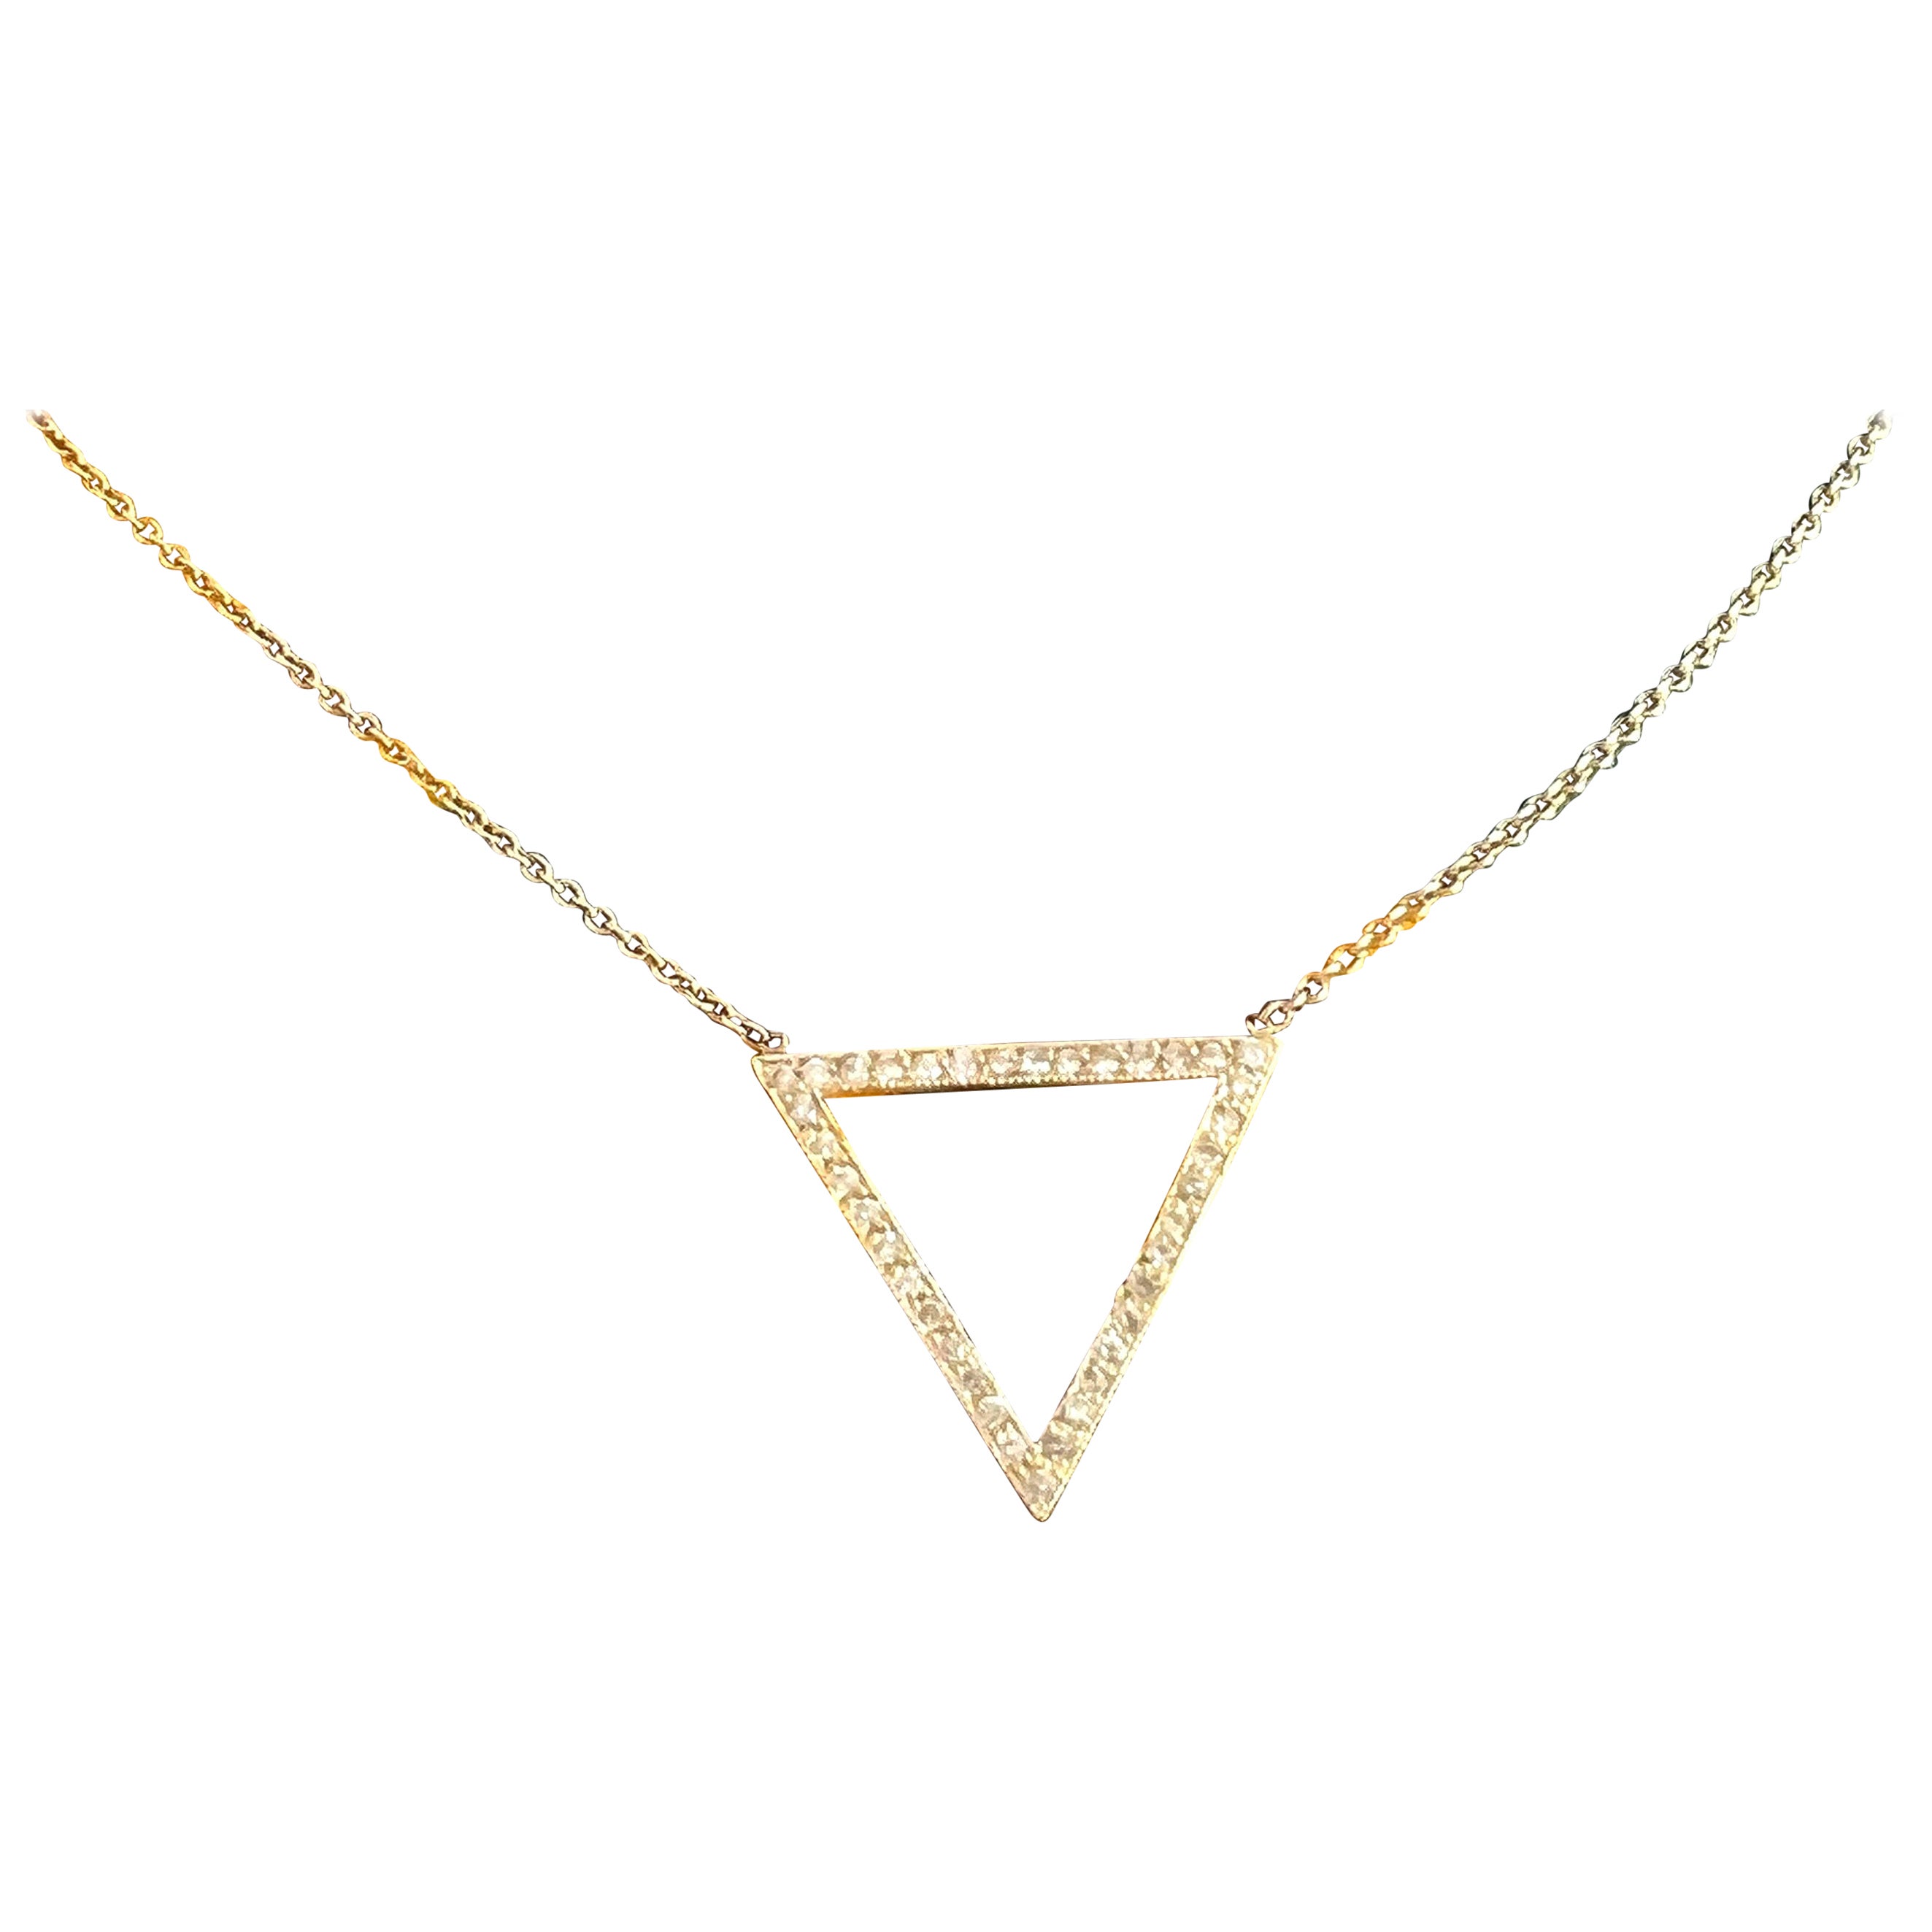 Zoe Chicco Collier station à pendentif triangulaire en or jaune 14 carats et diamants